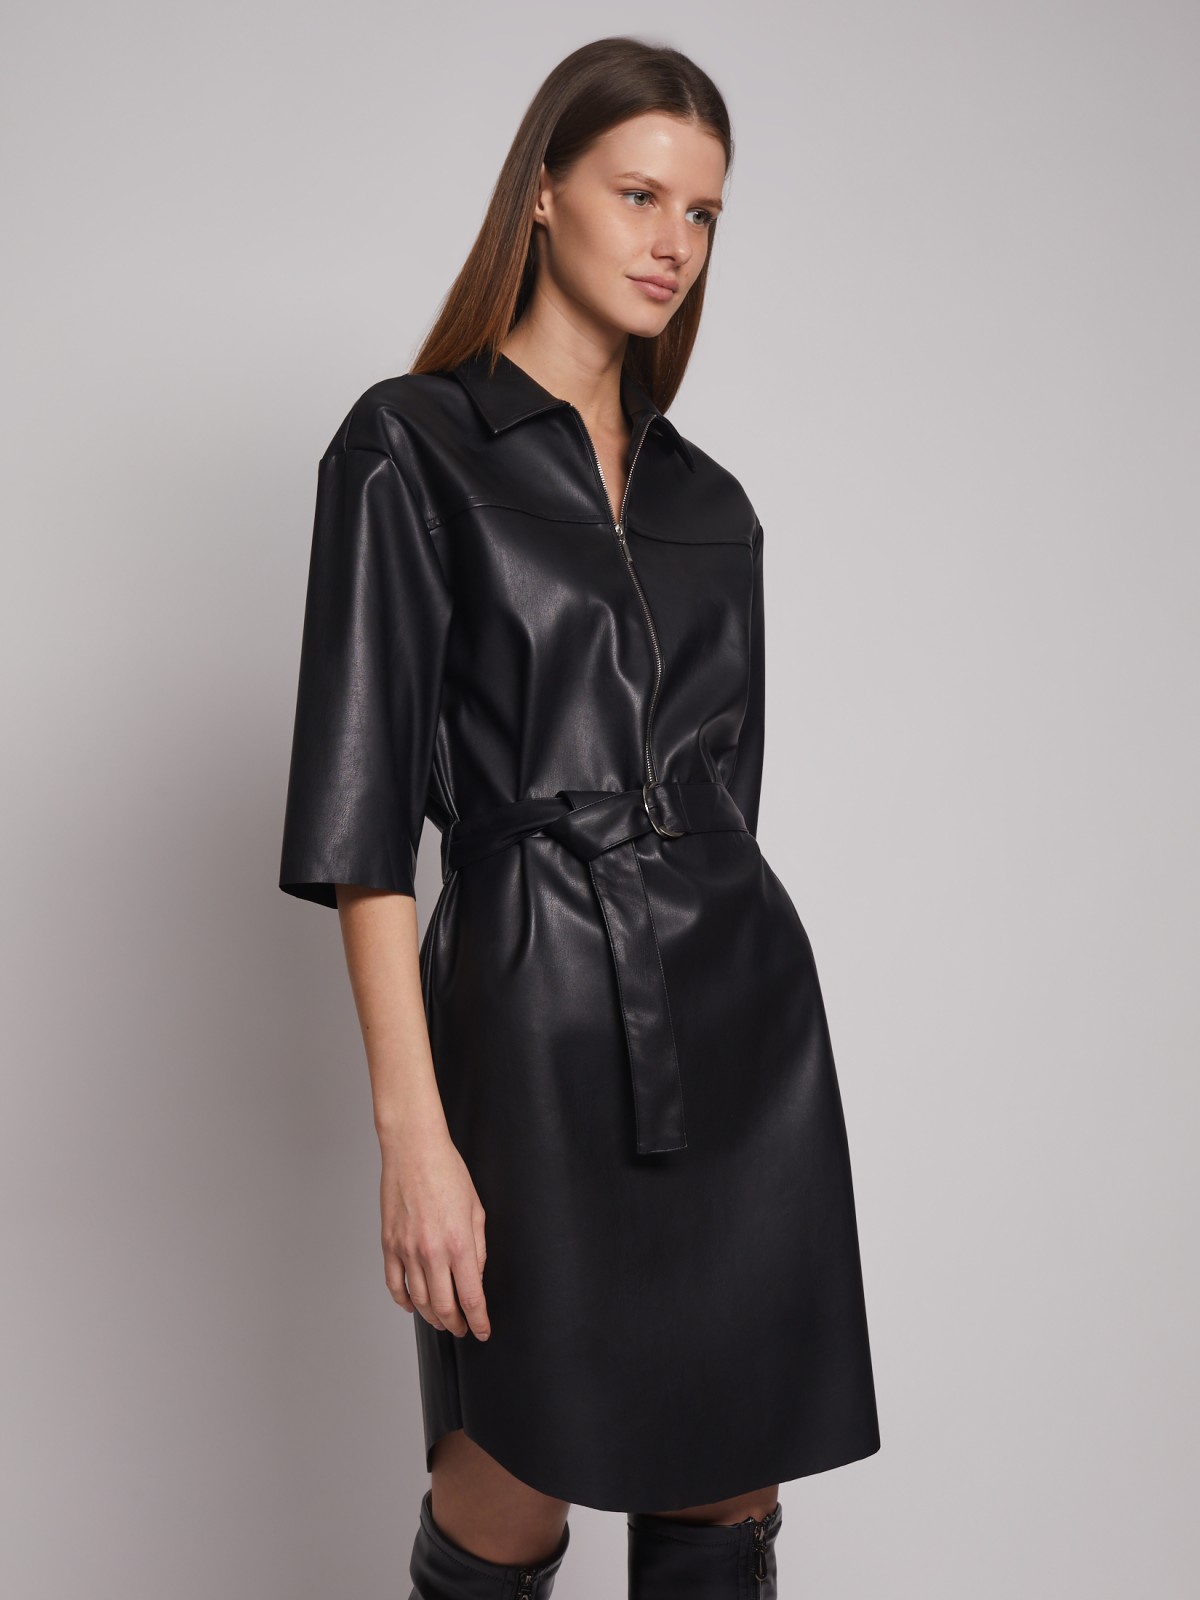 Платье-рубашка из экокожи с поясом zolla 223128259051, цвет черный, размер S